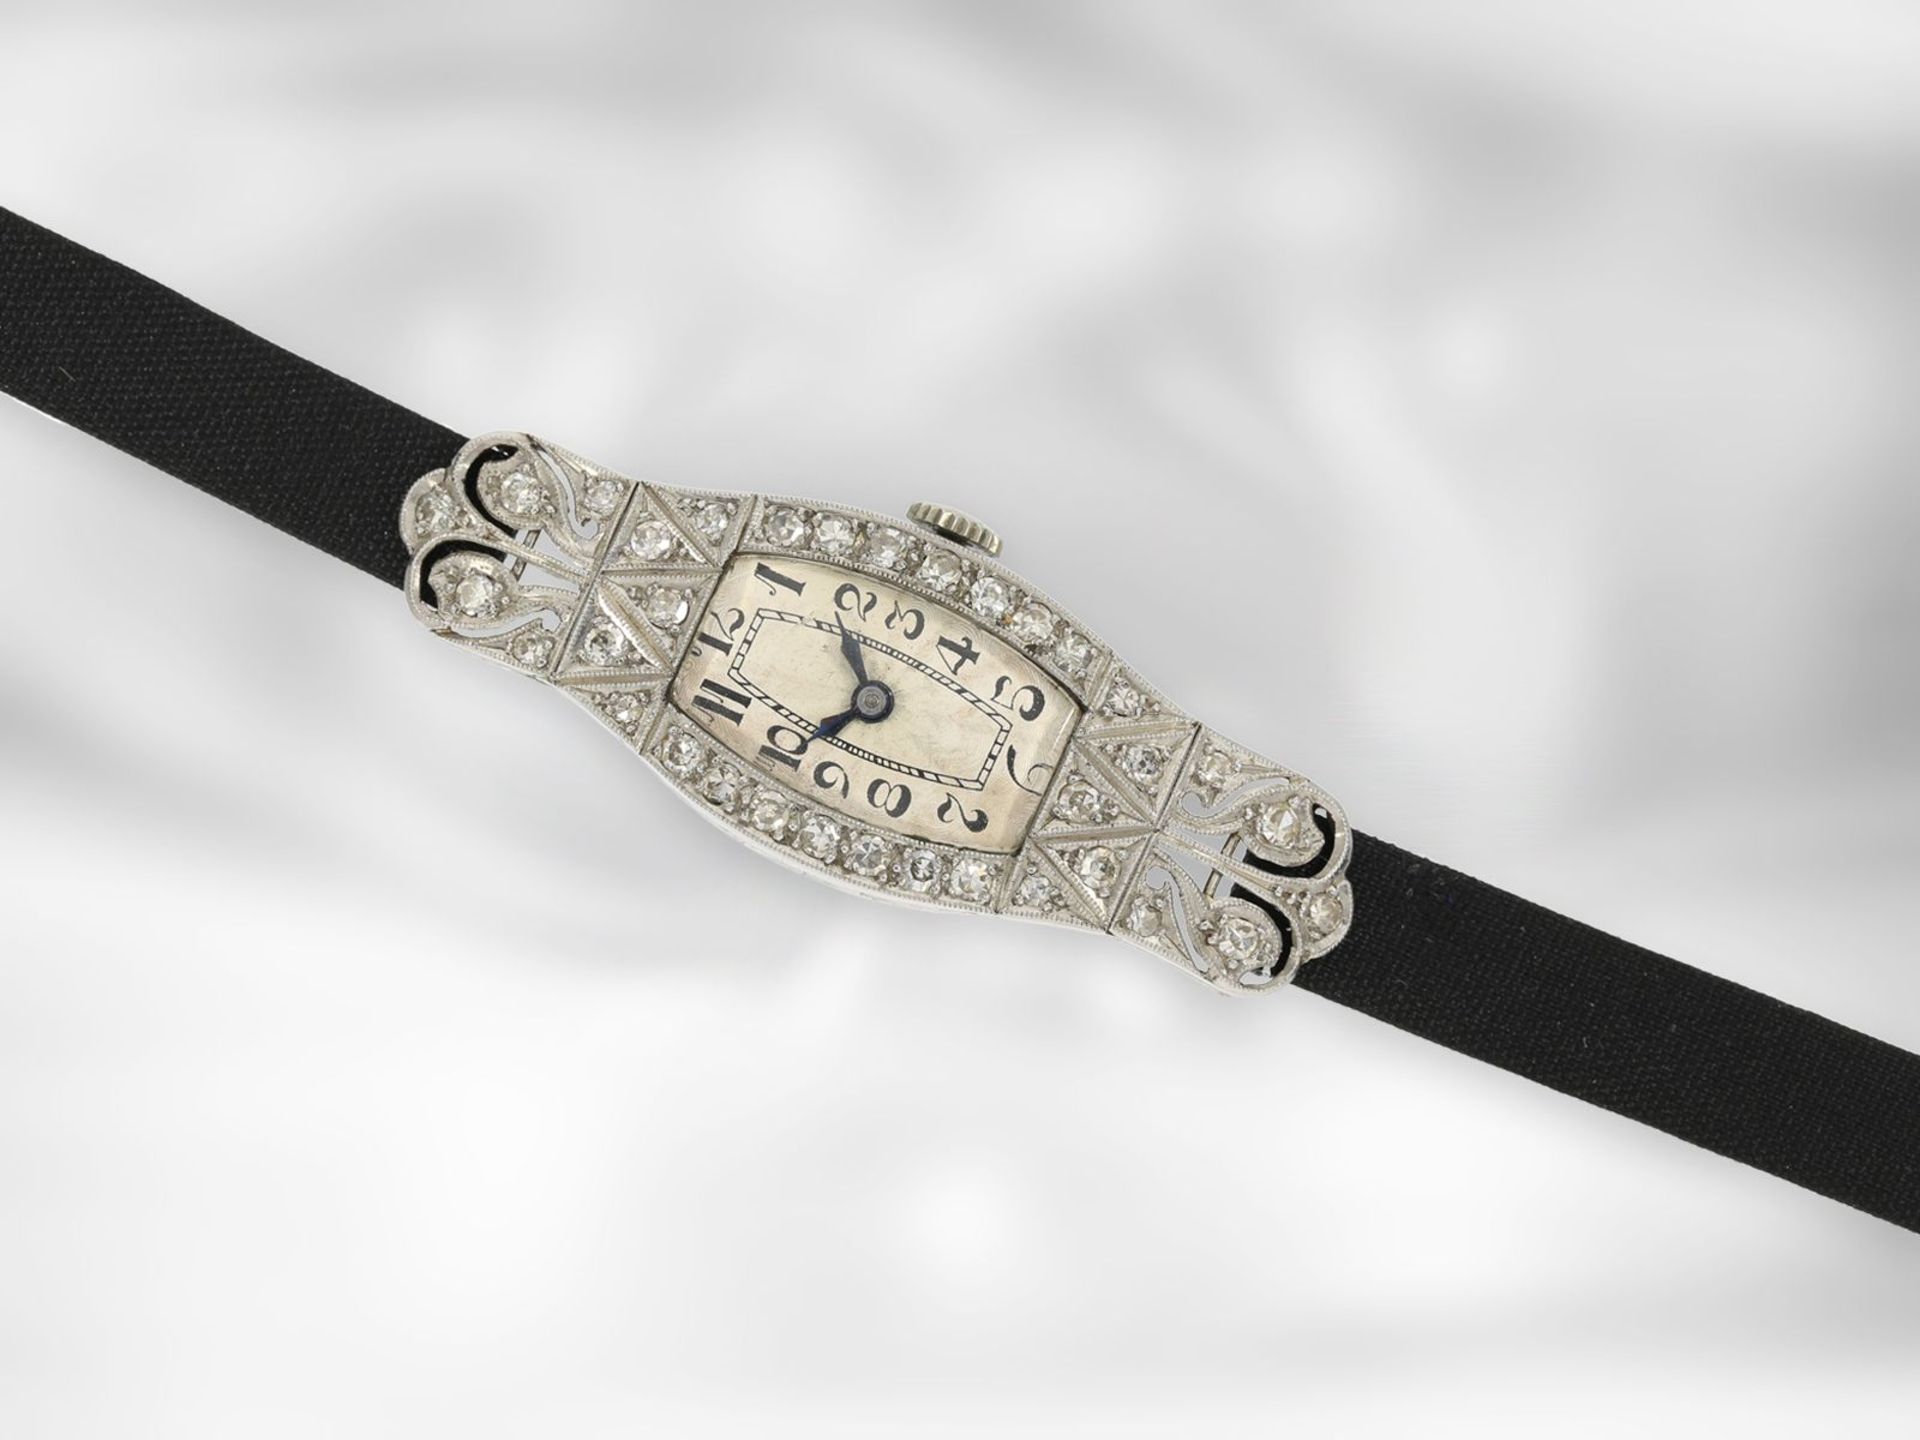 Armbanduhr: attraktive Art déco Damenuhr aus Platin mit Diamantbesatz, ca. 1920